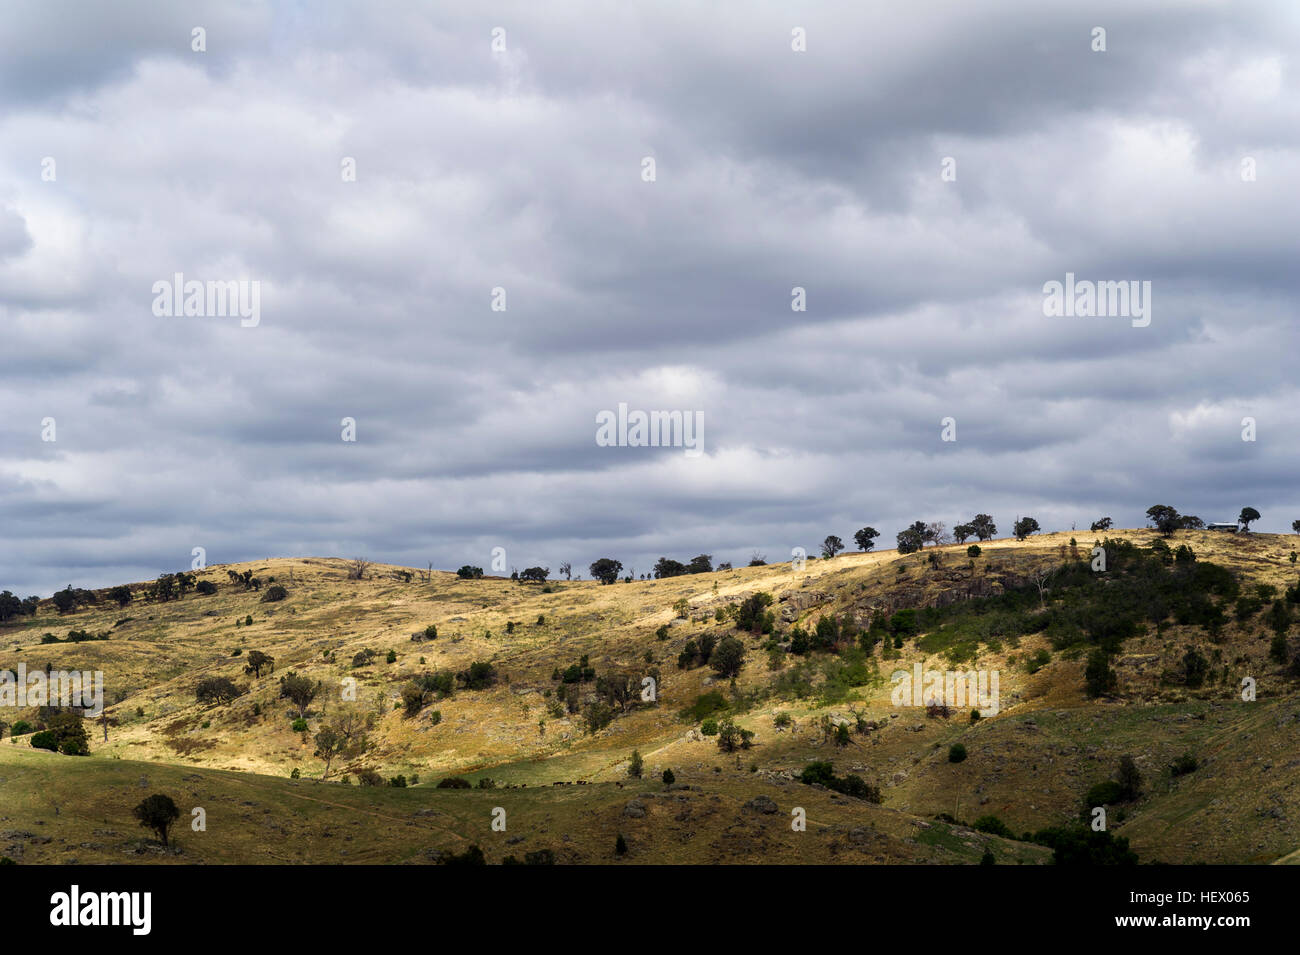 Des nuages de pluie au-dessus de terres agricoles vallonnées à sec un jour d'été. Banque D'Images